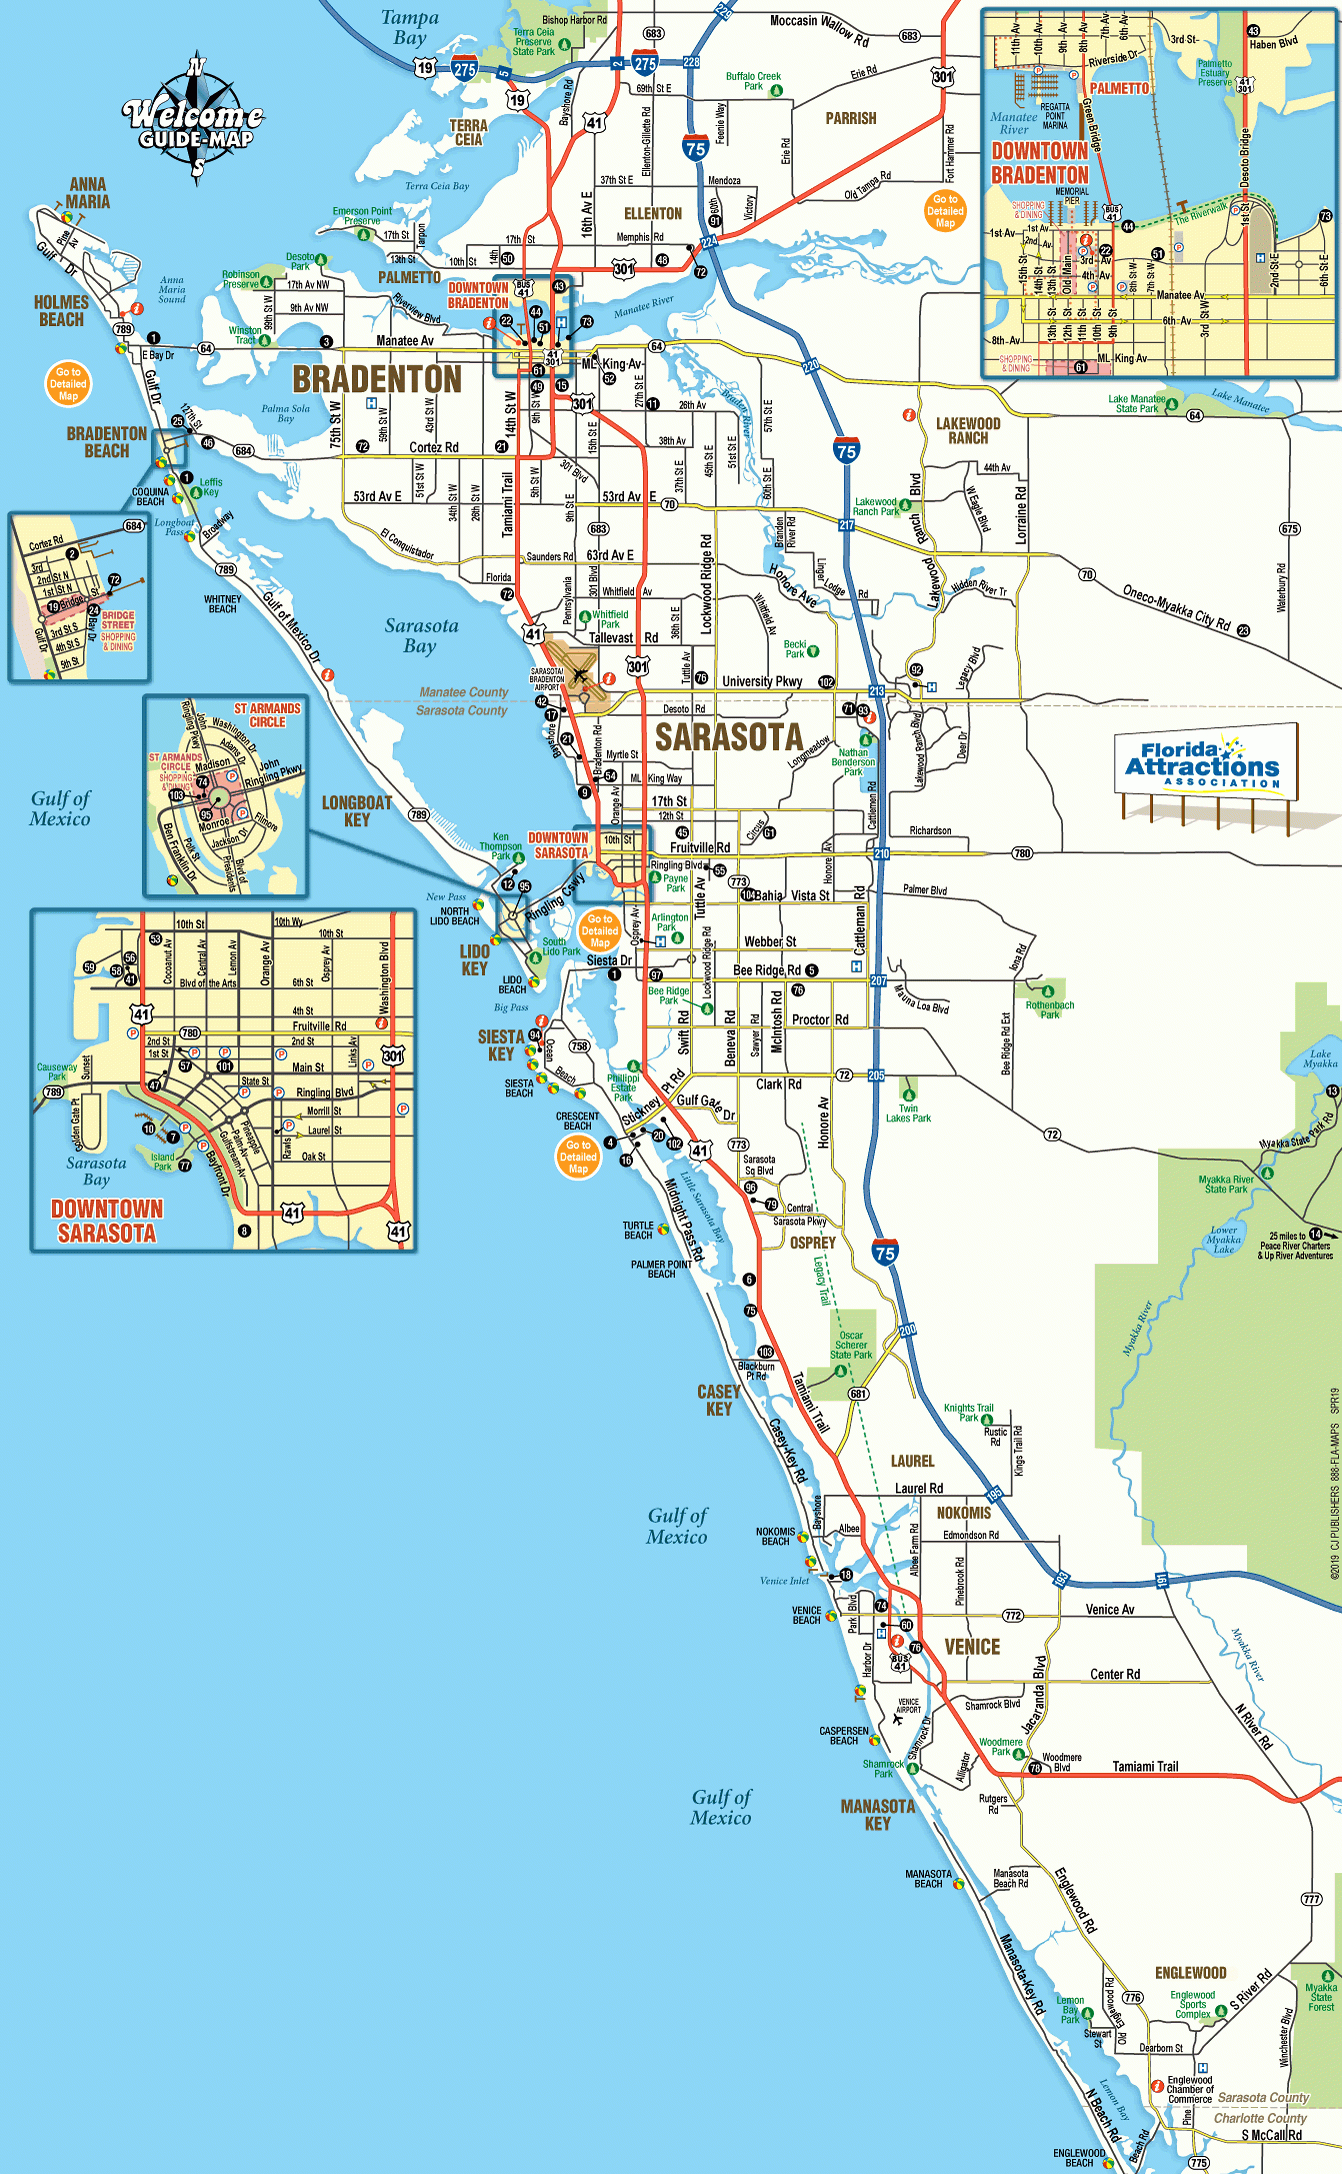 Map Of Sarasota And Bradenton Florida - Welcome Guide-Map To - Where Is Sarasota Florida On The Map